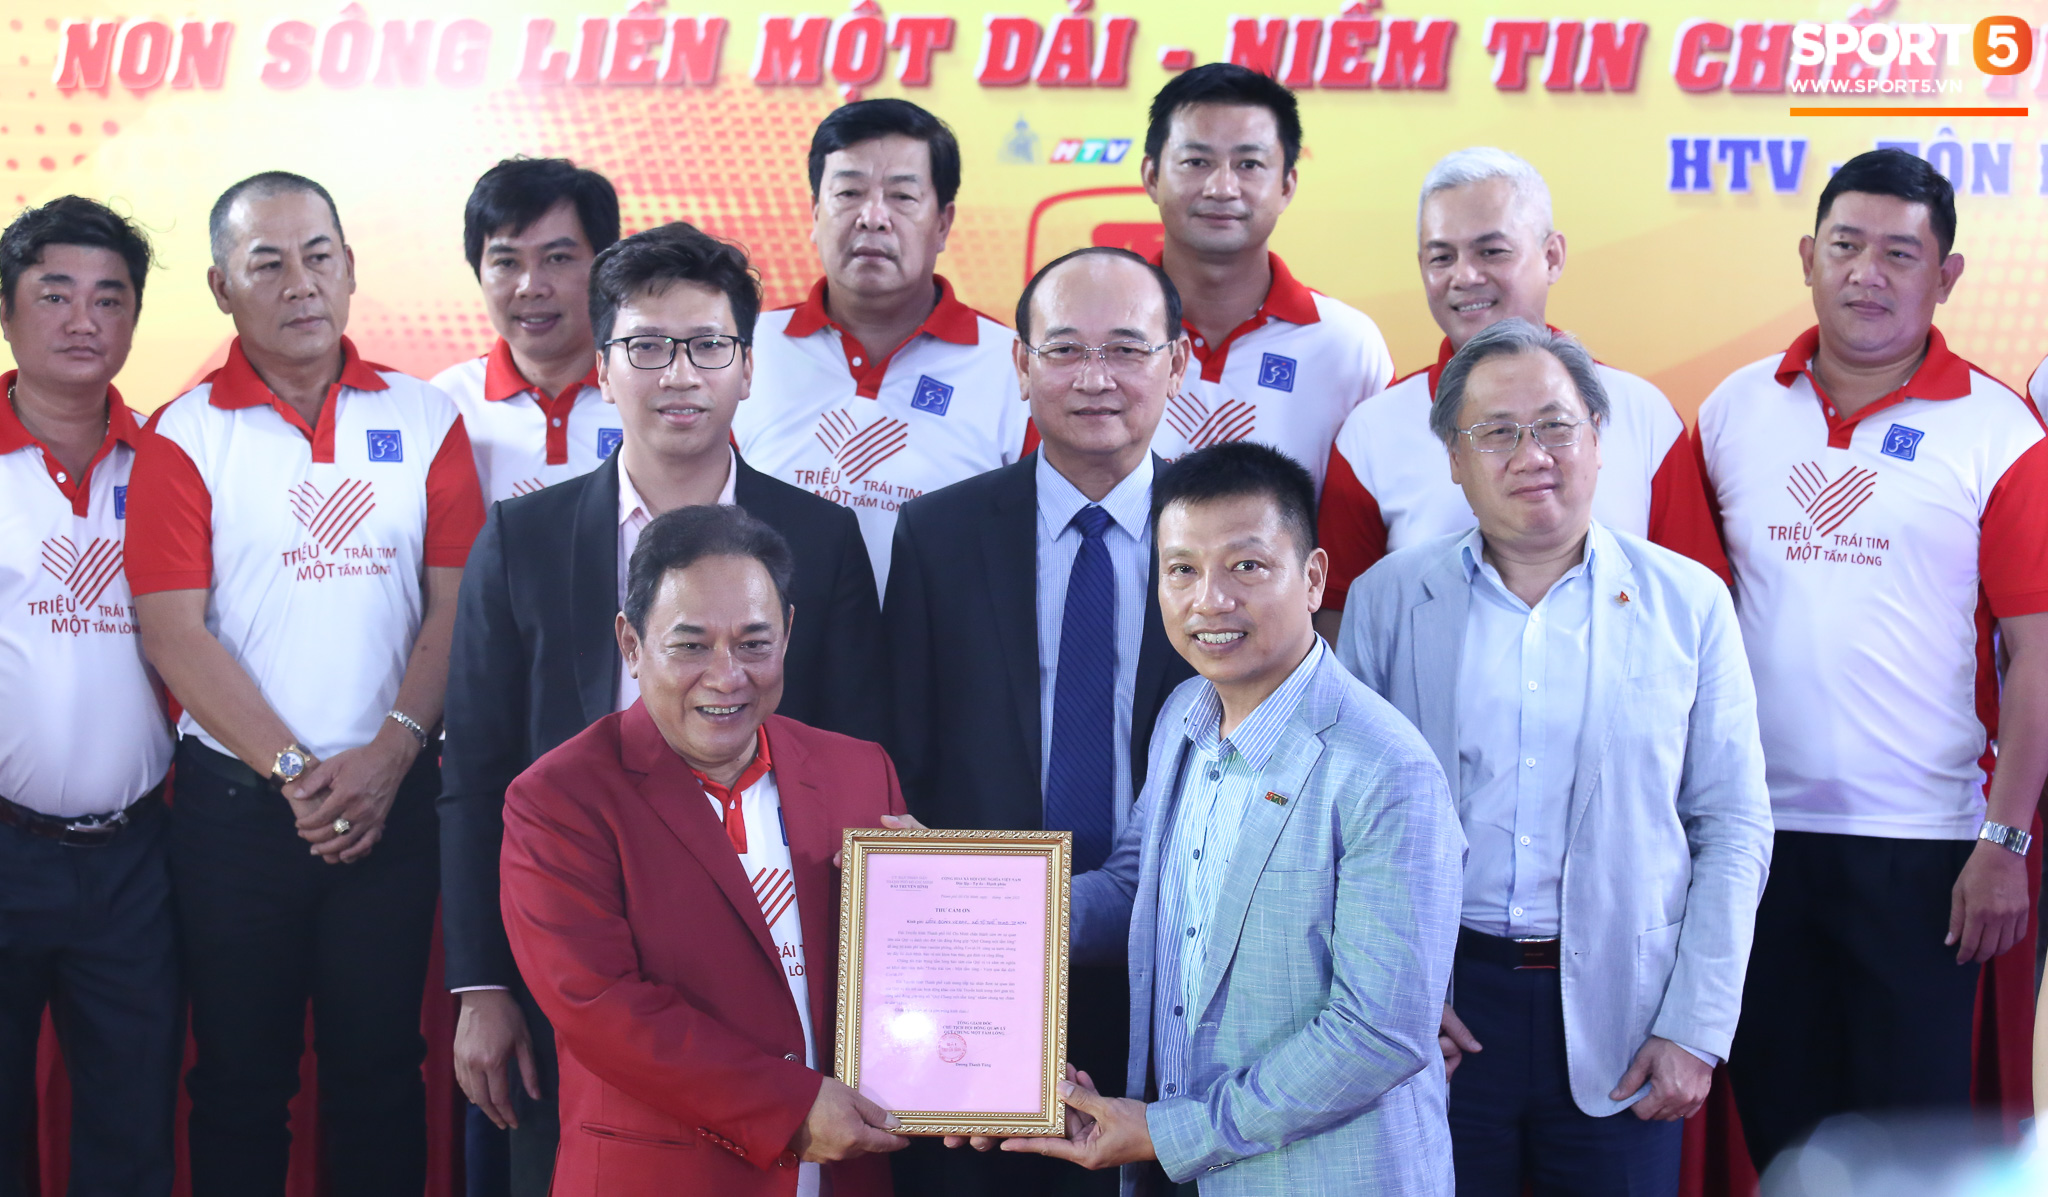 Đua xe đạp Cup truyền hình HTV 2021, "đội tuyển trẻ Việt Nam" tranh tài cùng 14 đội đua mạnh từ khắp cả nước  - Ảnh 1.